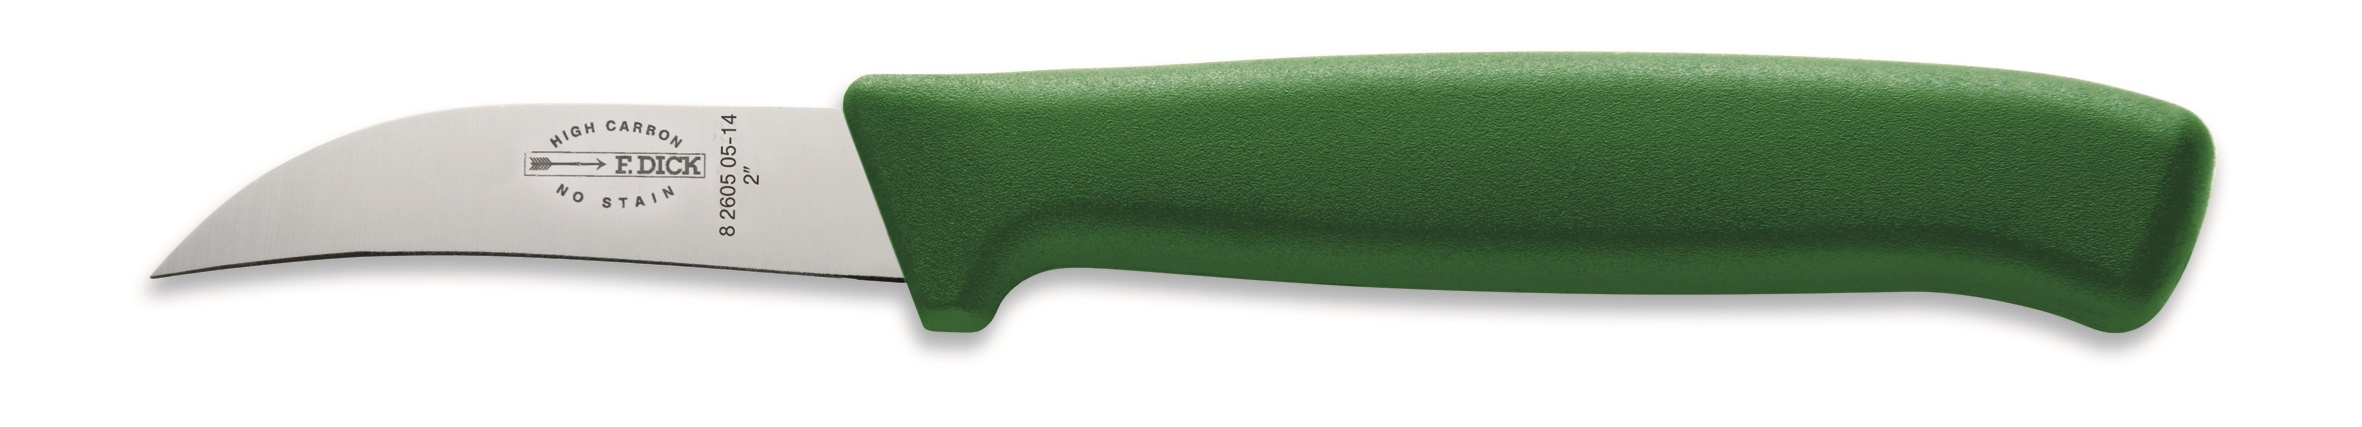 Nůž na očišťování zeleniny a ovoce, zelený v délce 5 cm